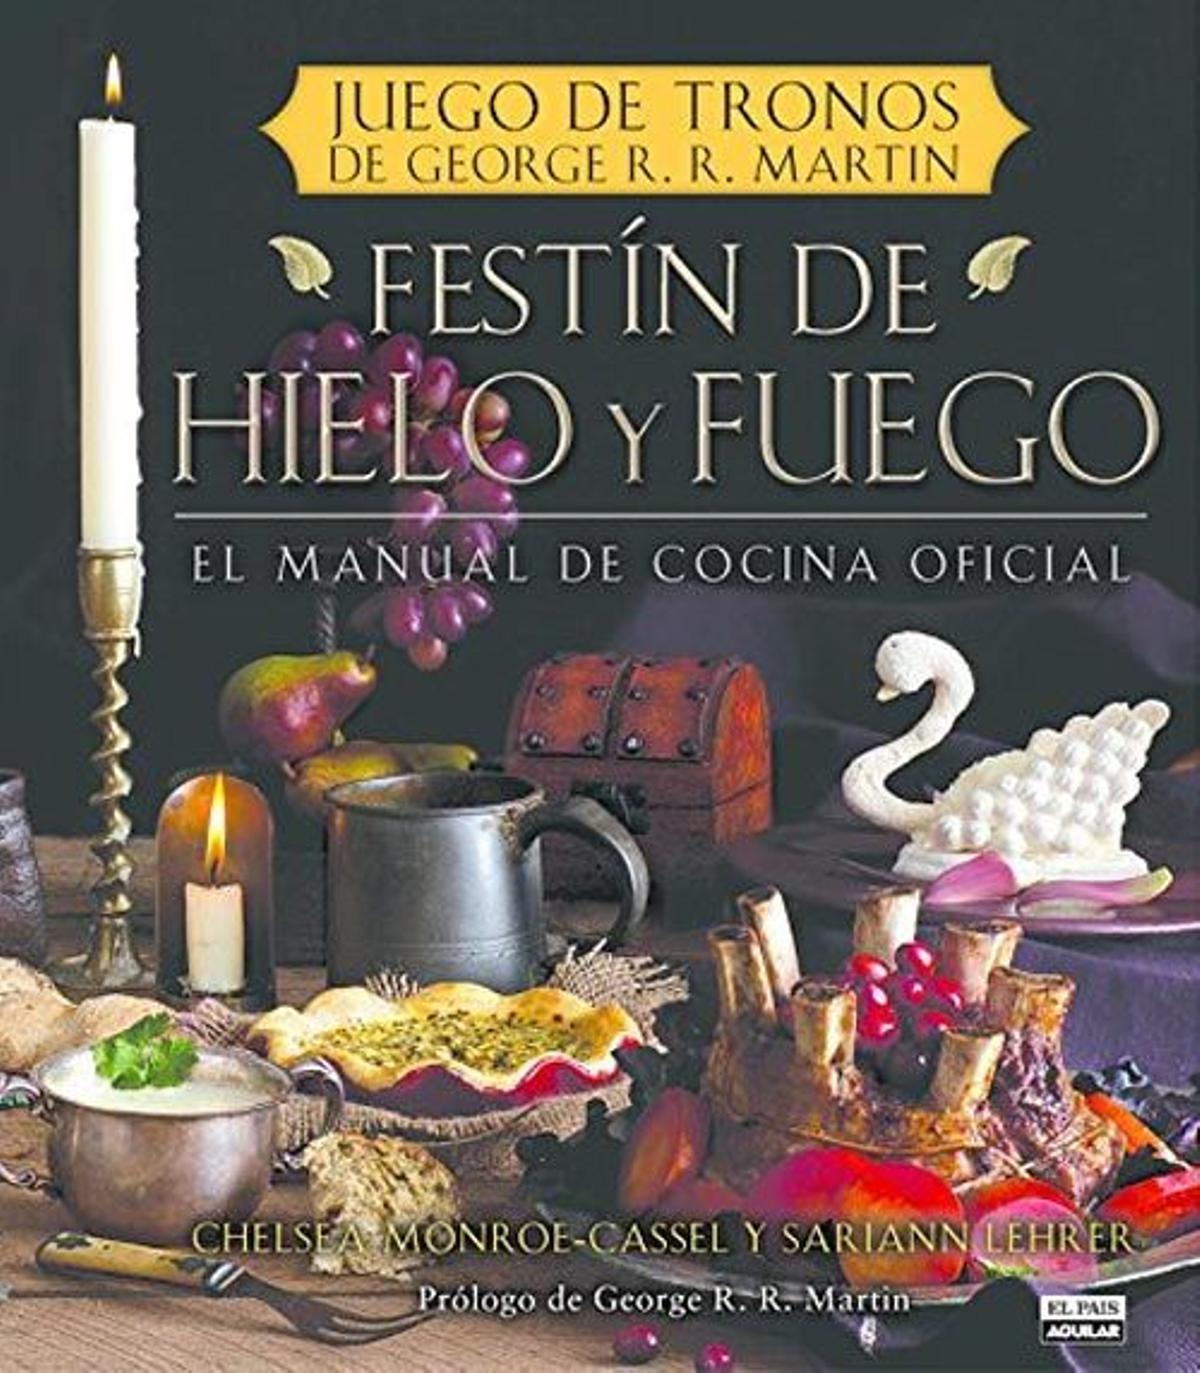 Festín de hielo y fuego. El manual de cocina oficial de 'Juego de Tronos', de Chelsea Monroe-Cassel y Sariann Lehrer